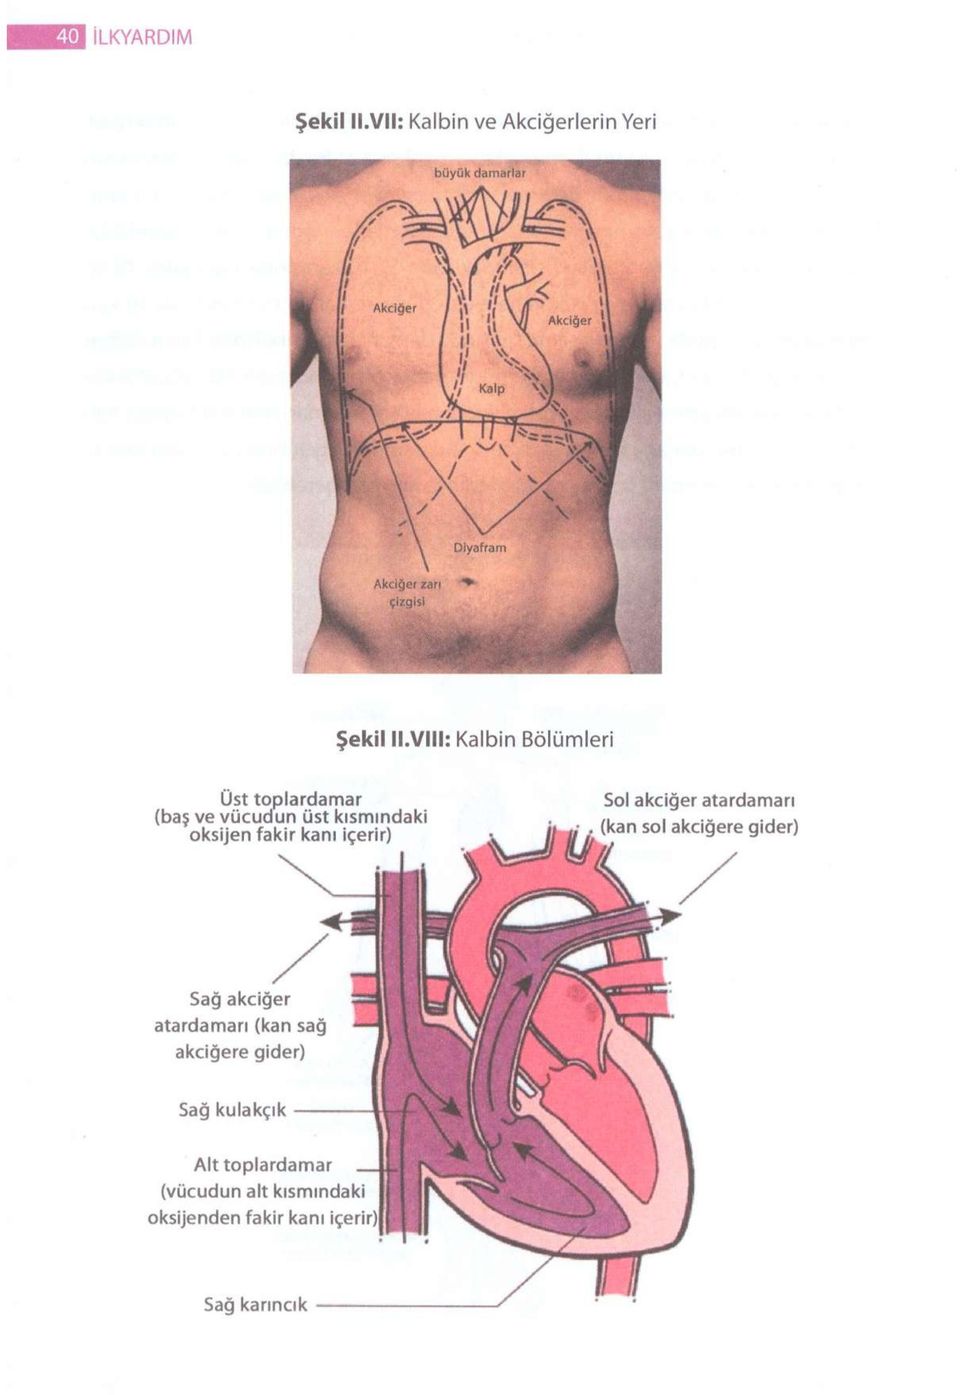 fakir kanı içerir) Sol akciğer atardamarı Sağ akciğer atardamarı (kan sağ